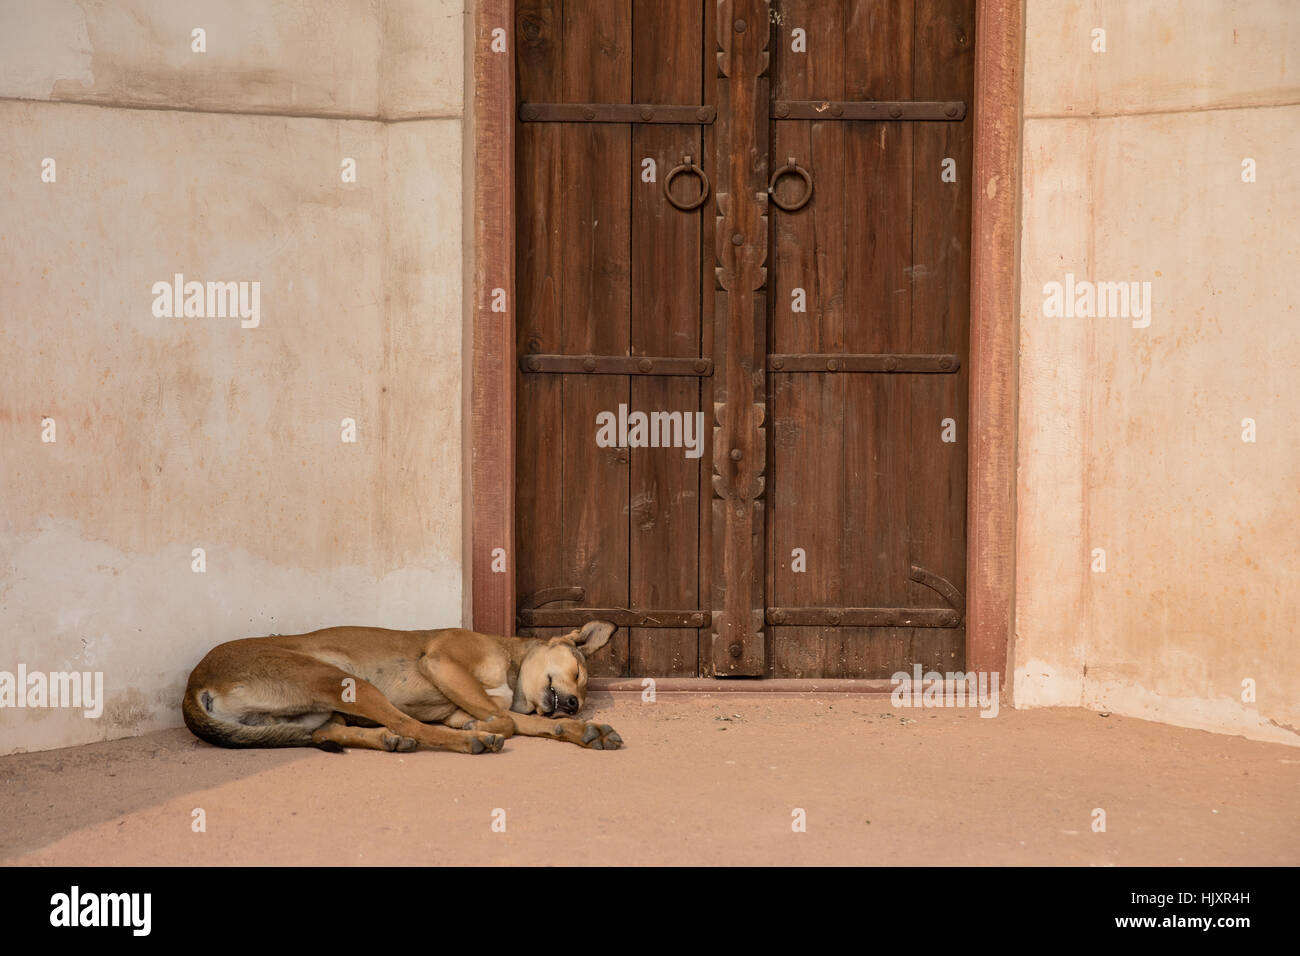 Un chien dormant dans une porte à Tombe de Humayun à New Delhi, Inde, le tombeau de l'empereur moghol Humayun. Banque D'Images